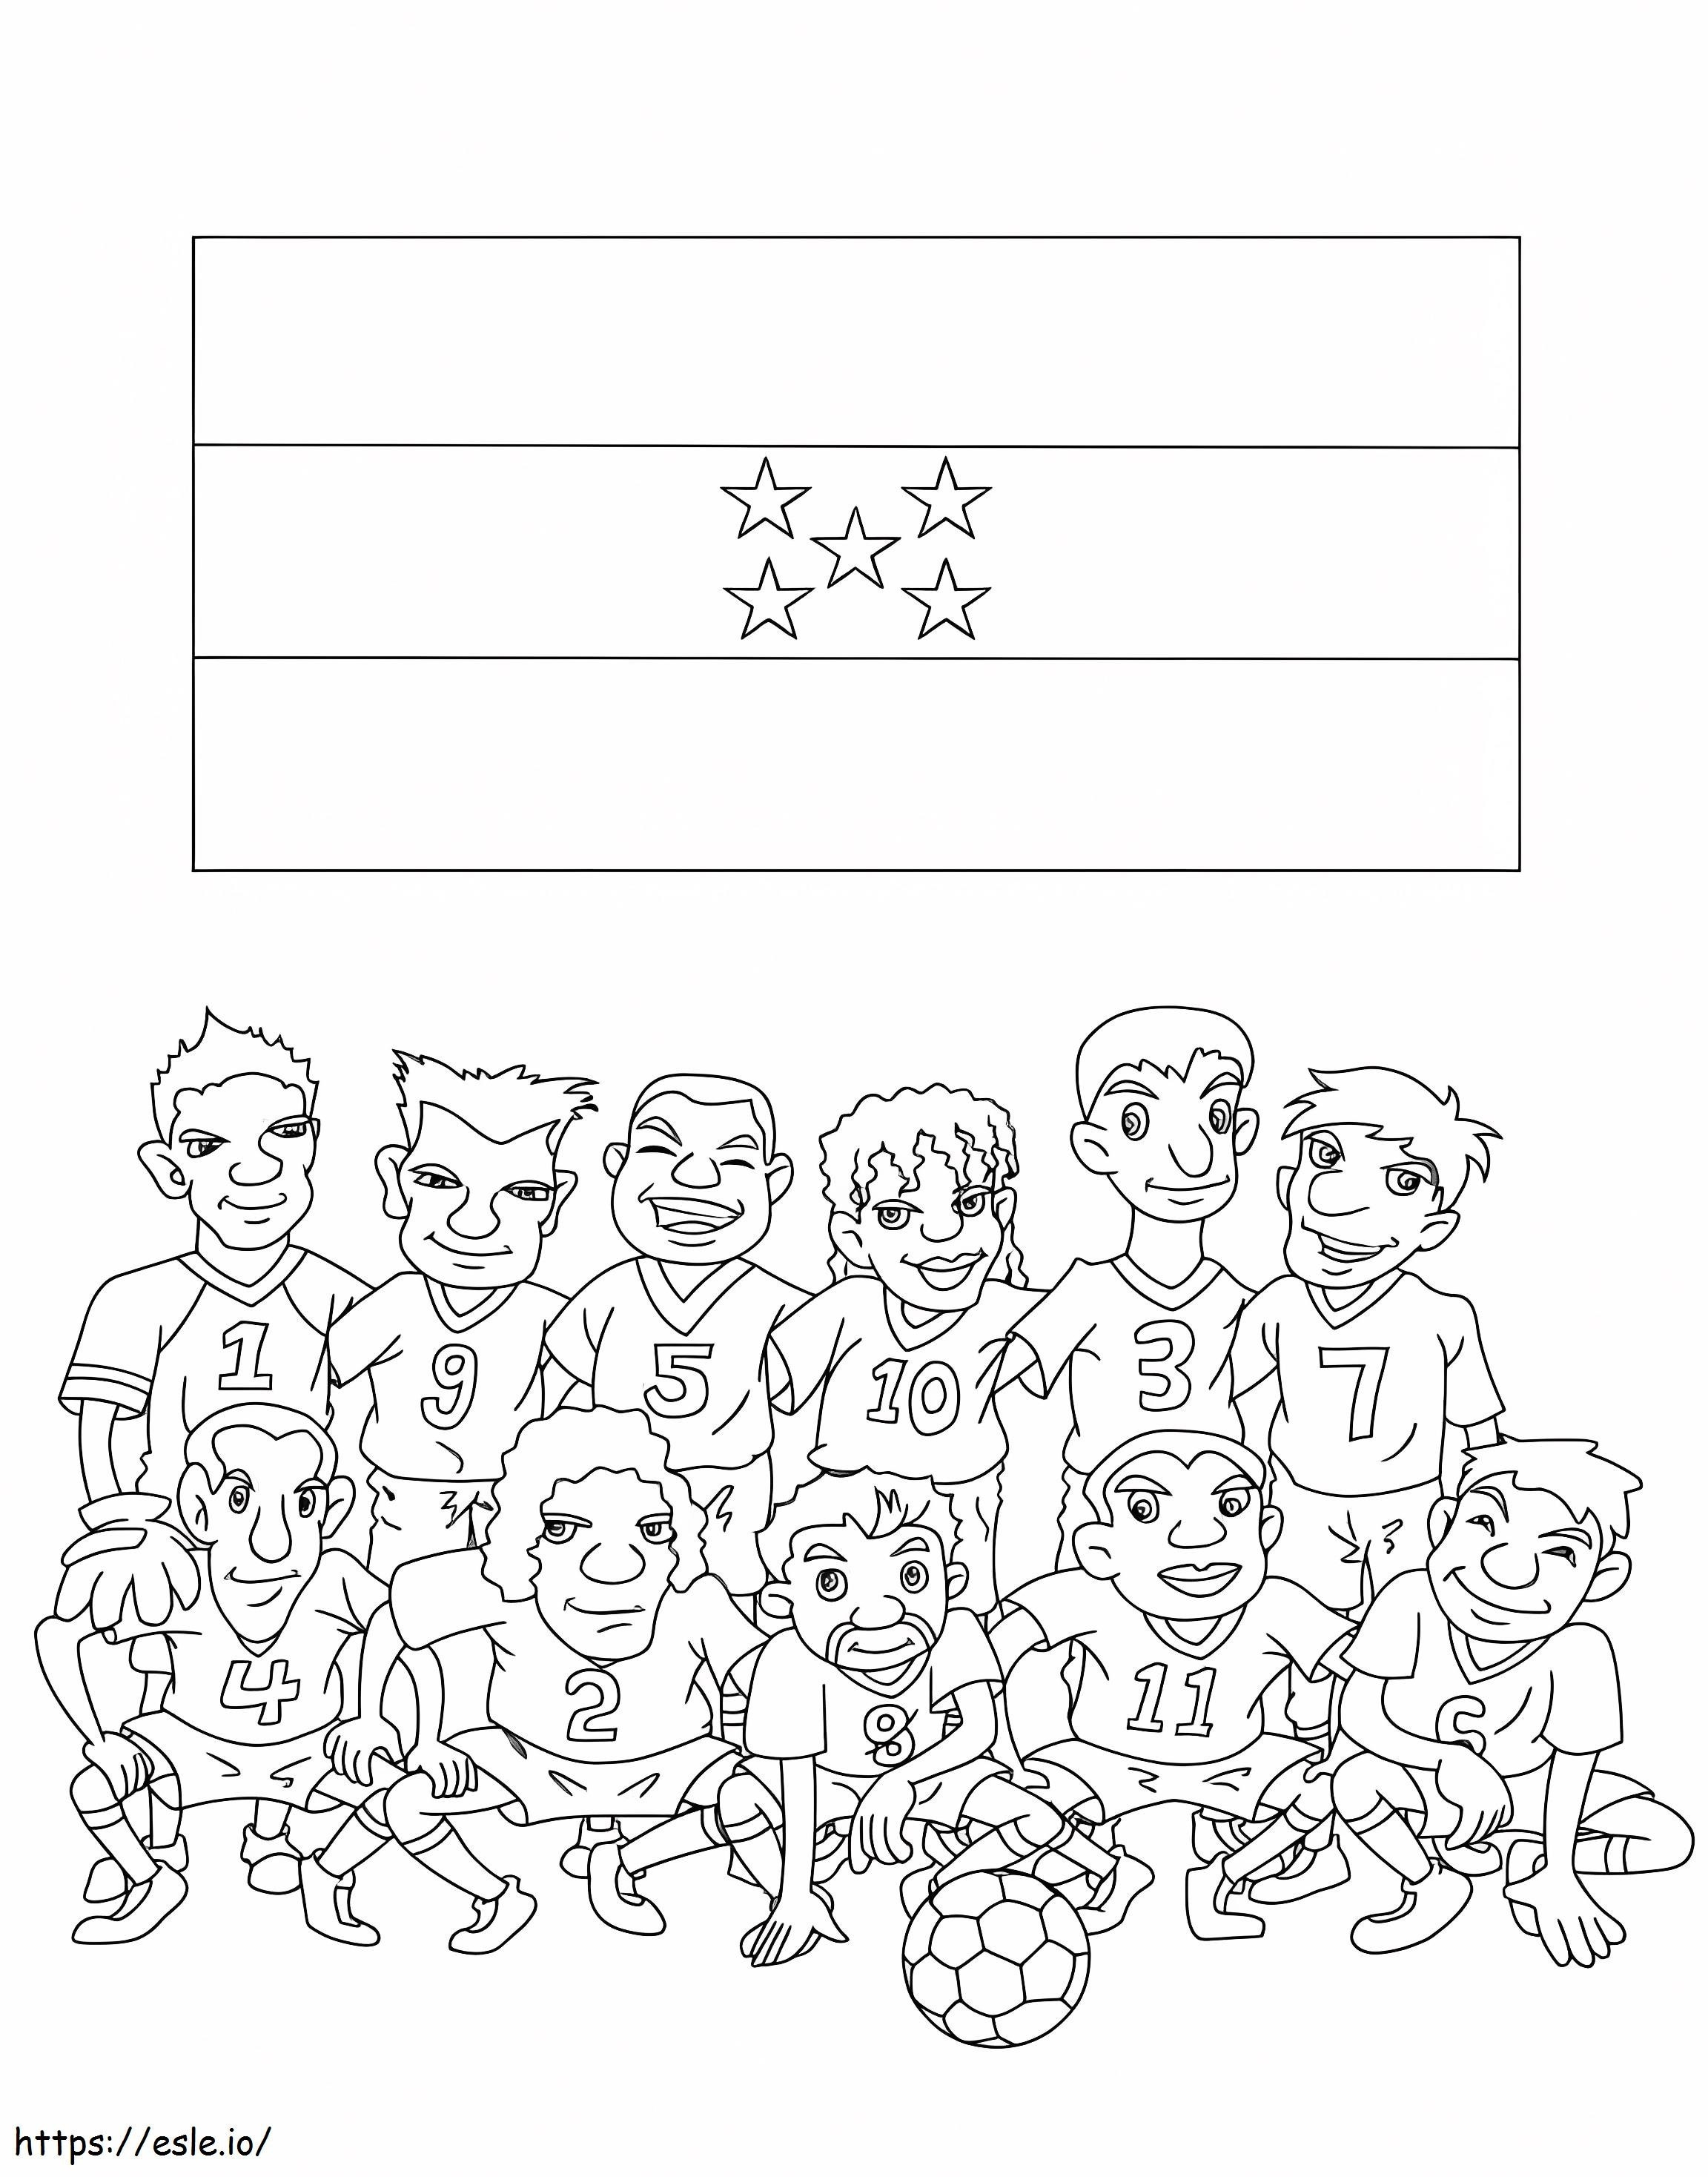 Seleção Nacional de Futebol de Honduras para colorir